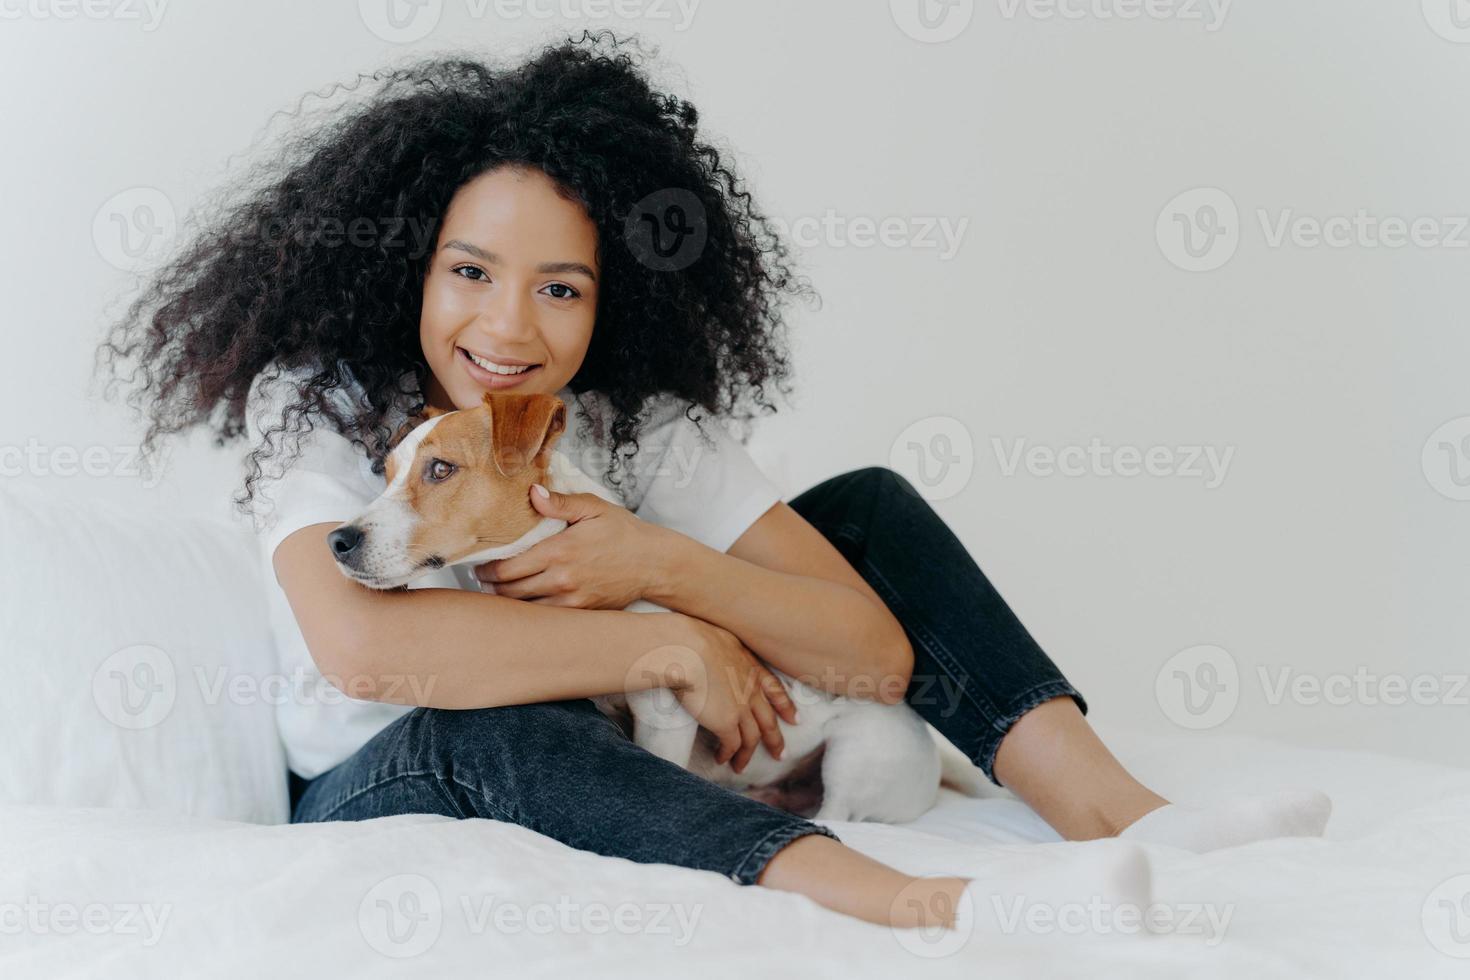 foto av härlig ung kvinnlig husdjursägare poserar i rent vitt sovrum, kramar hund, leker med bästa vän, bär vardagskläder, har ett glatt uttryck. människor, djur, kärlek, vänskap koncept